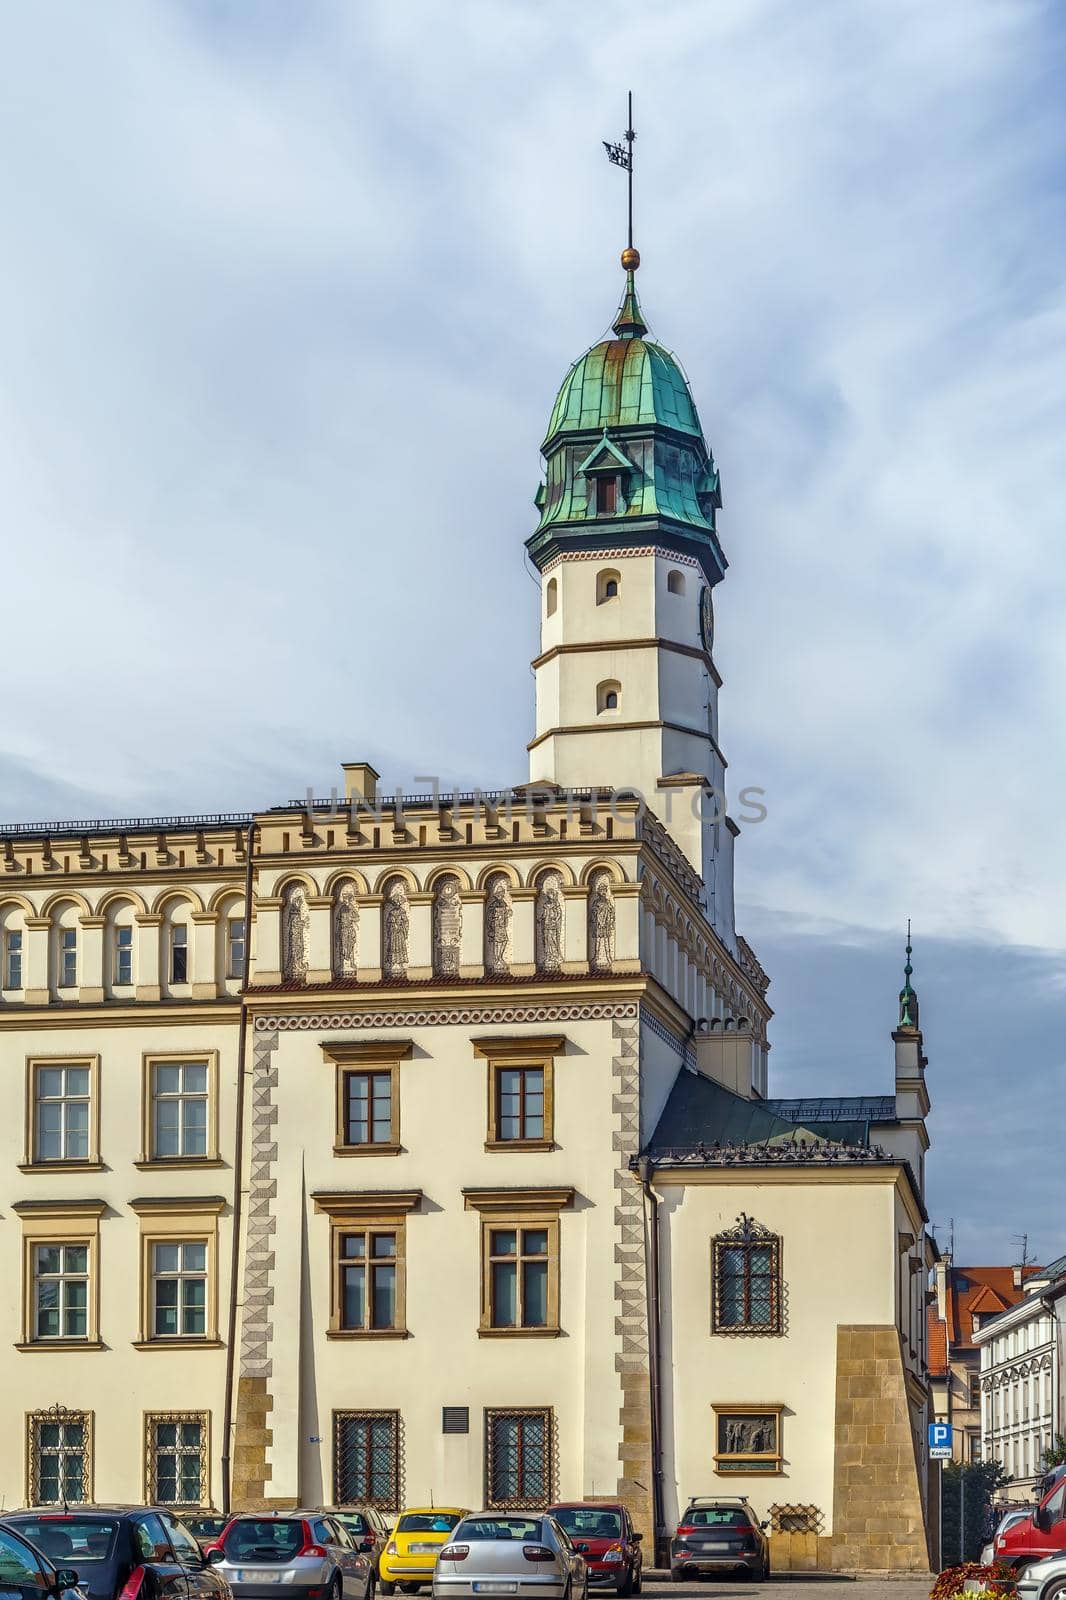 City Hall of Kazimierz, Krakow, Poland by borisb17